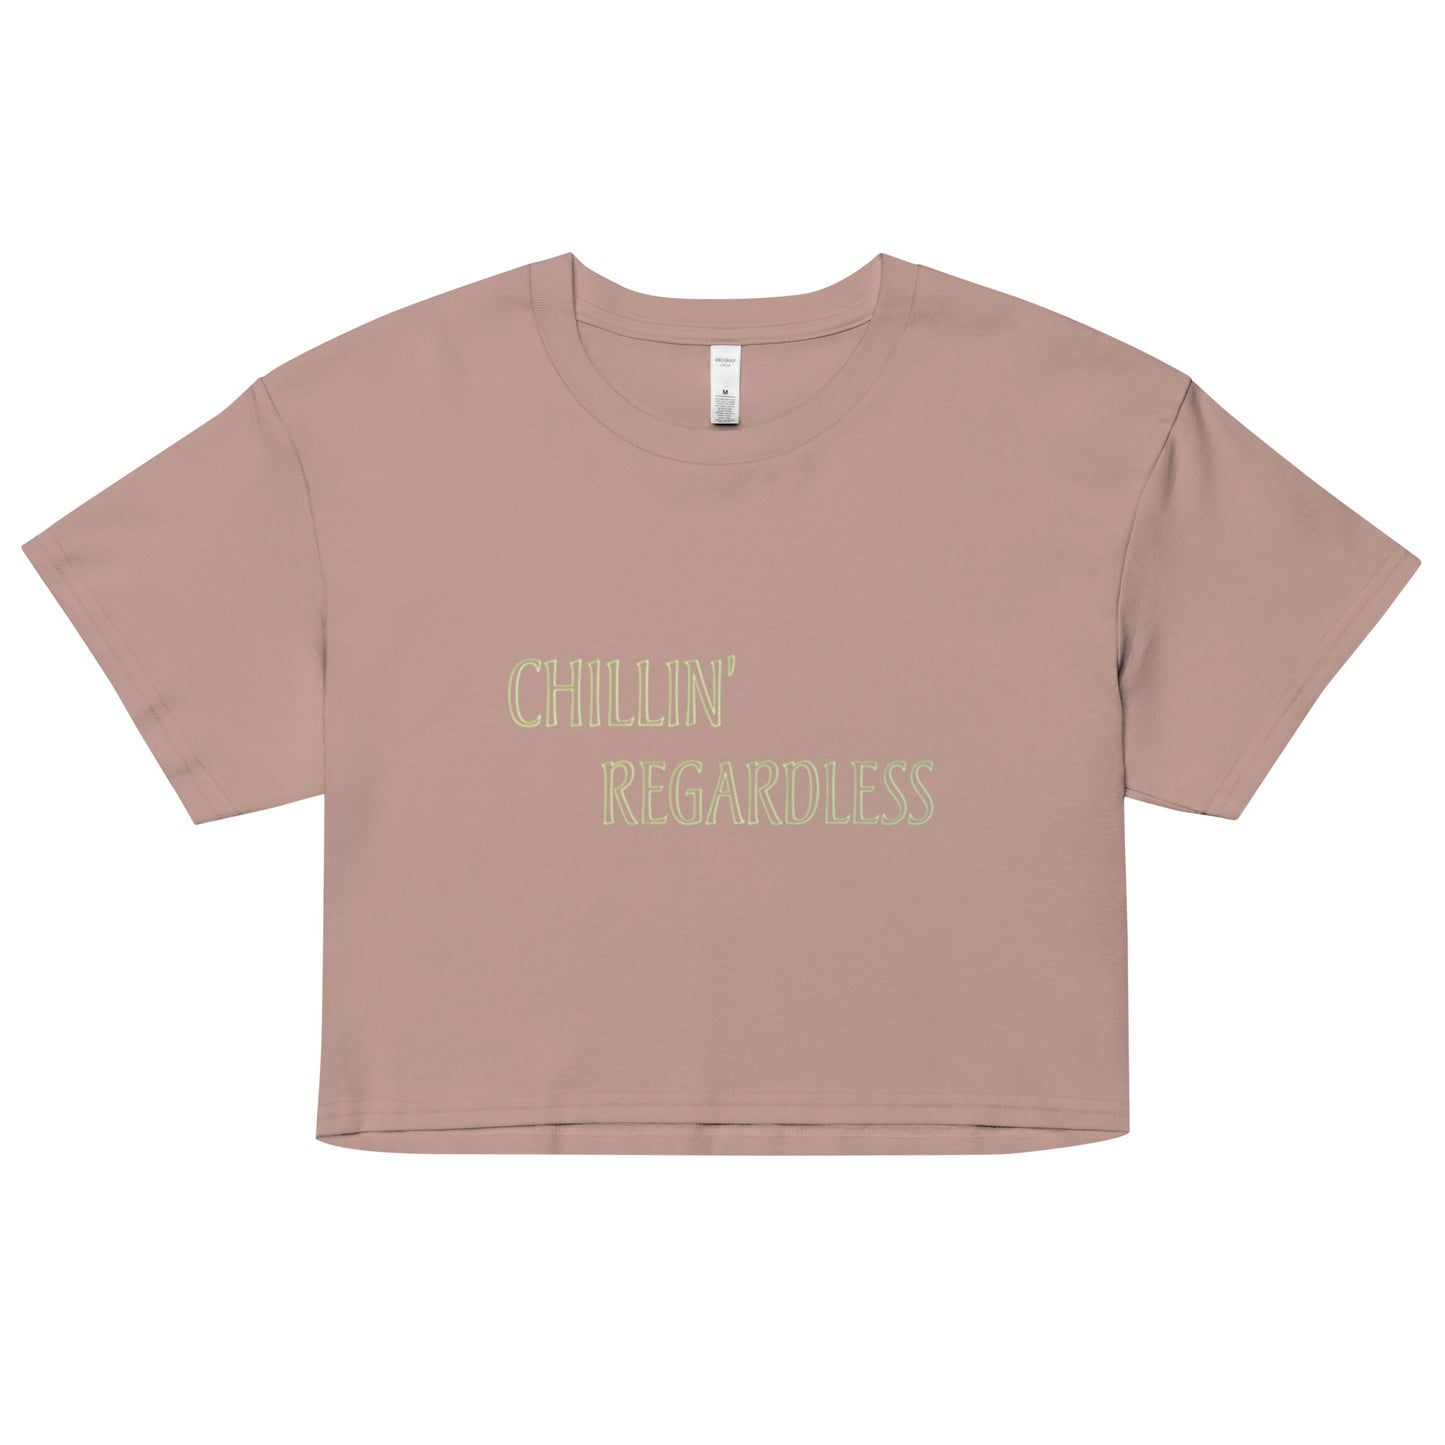 Women’s Chillin Regardless Peaceful crop top